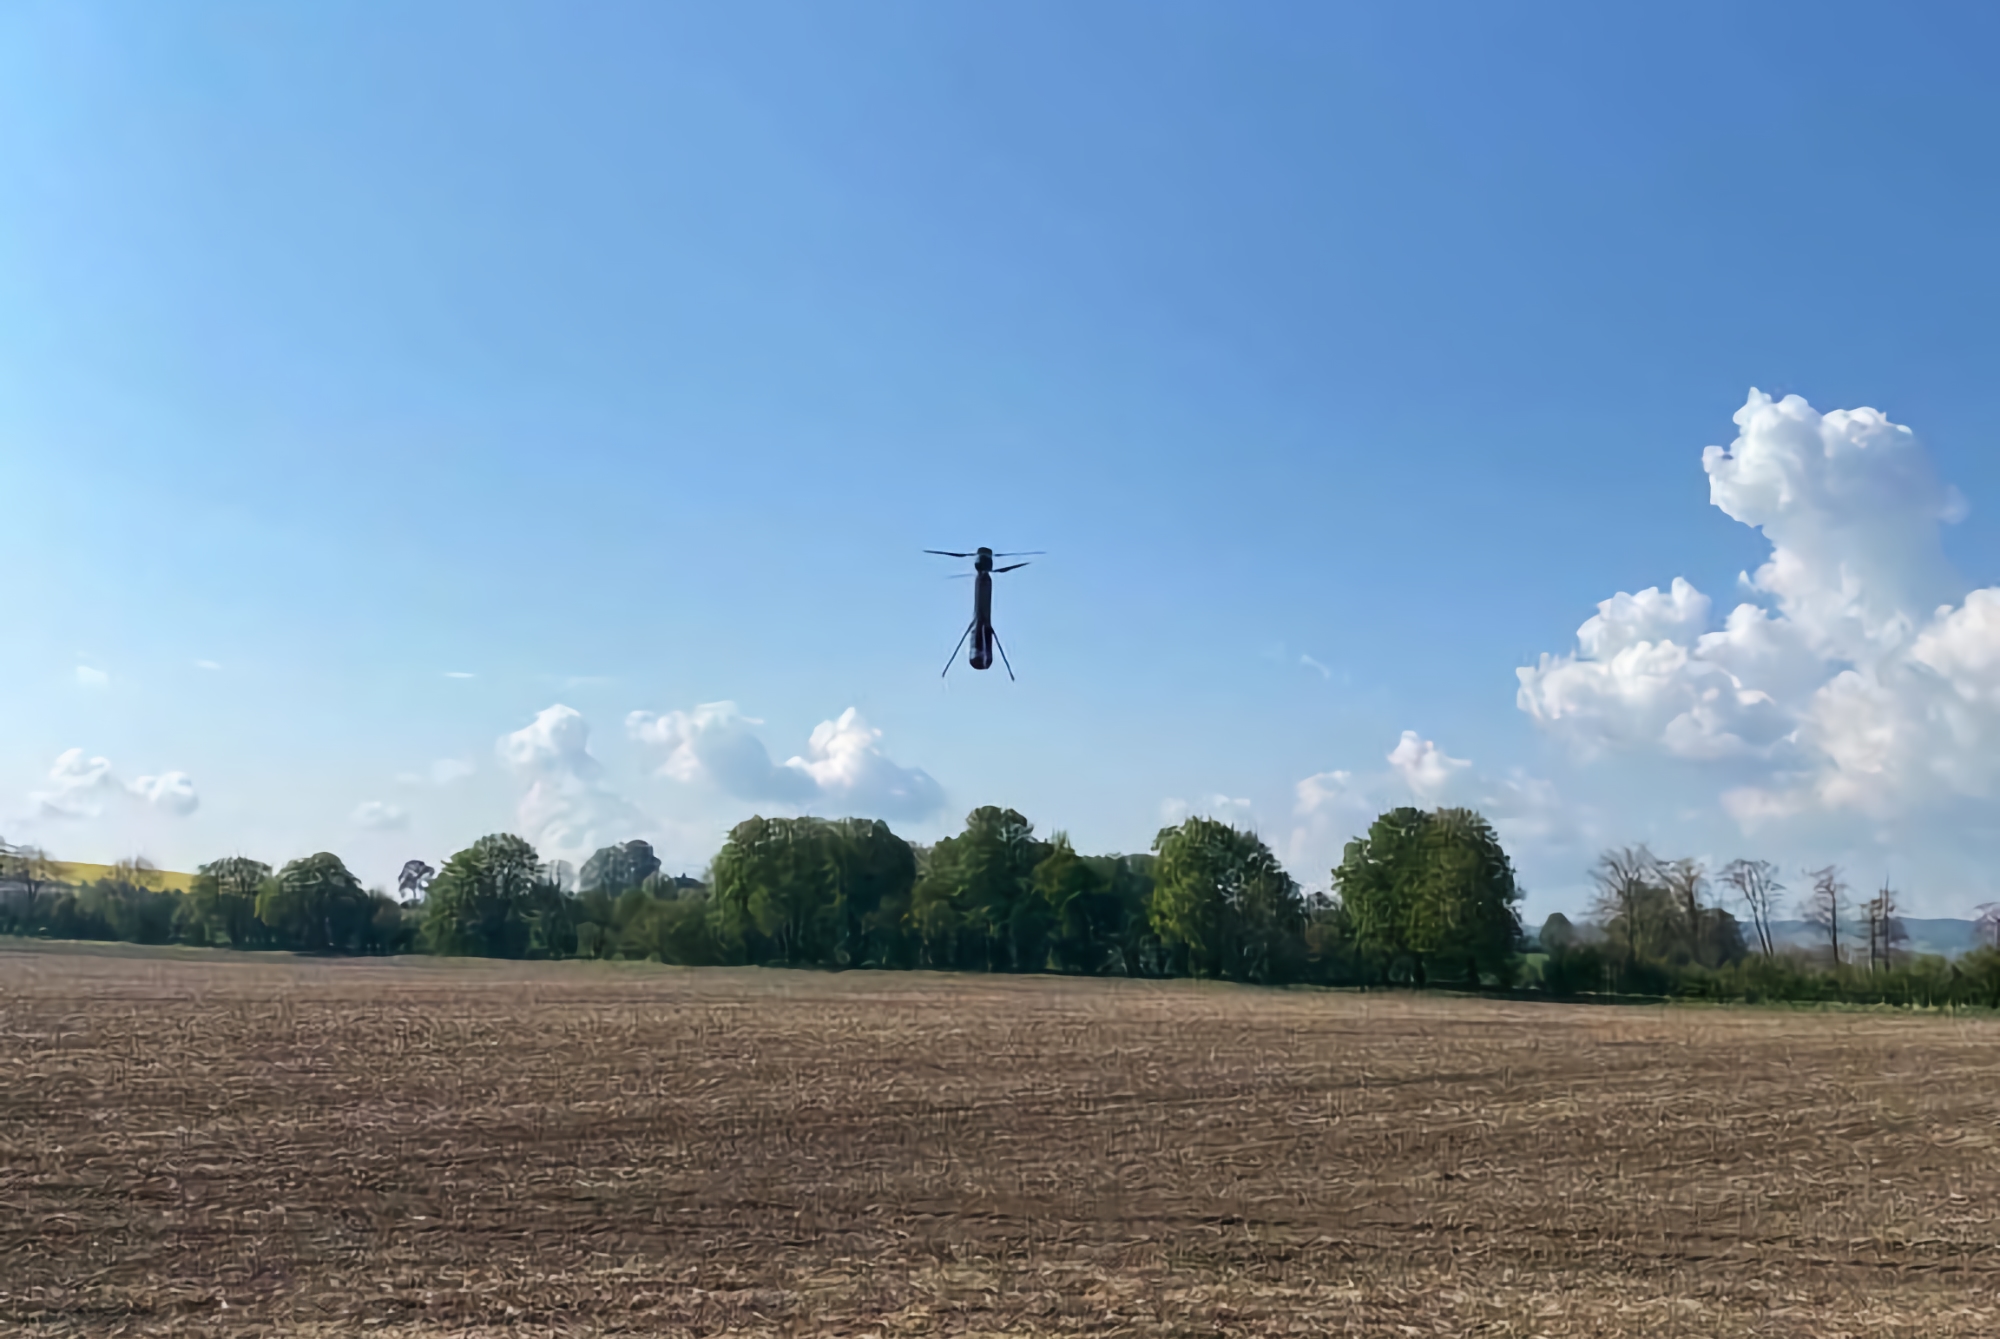 Im Dienst der Streitkräfte der Ukraine bemerkten sie eine ungewöhnliche Kamikaze-Drohne mit einem vertikalen Startsystem. Es könnte sich um ein seltenes PHOLOS UAV handeln